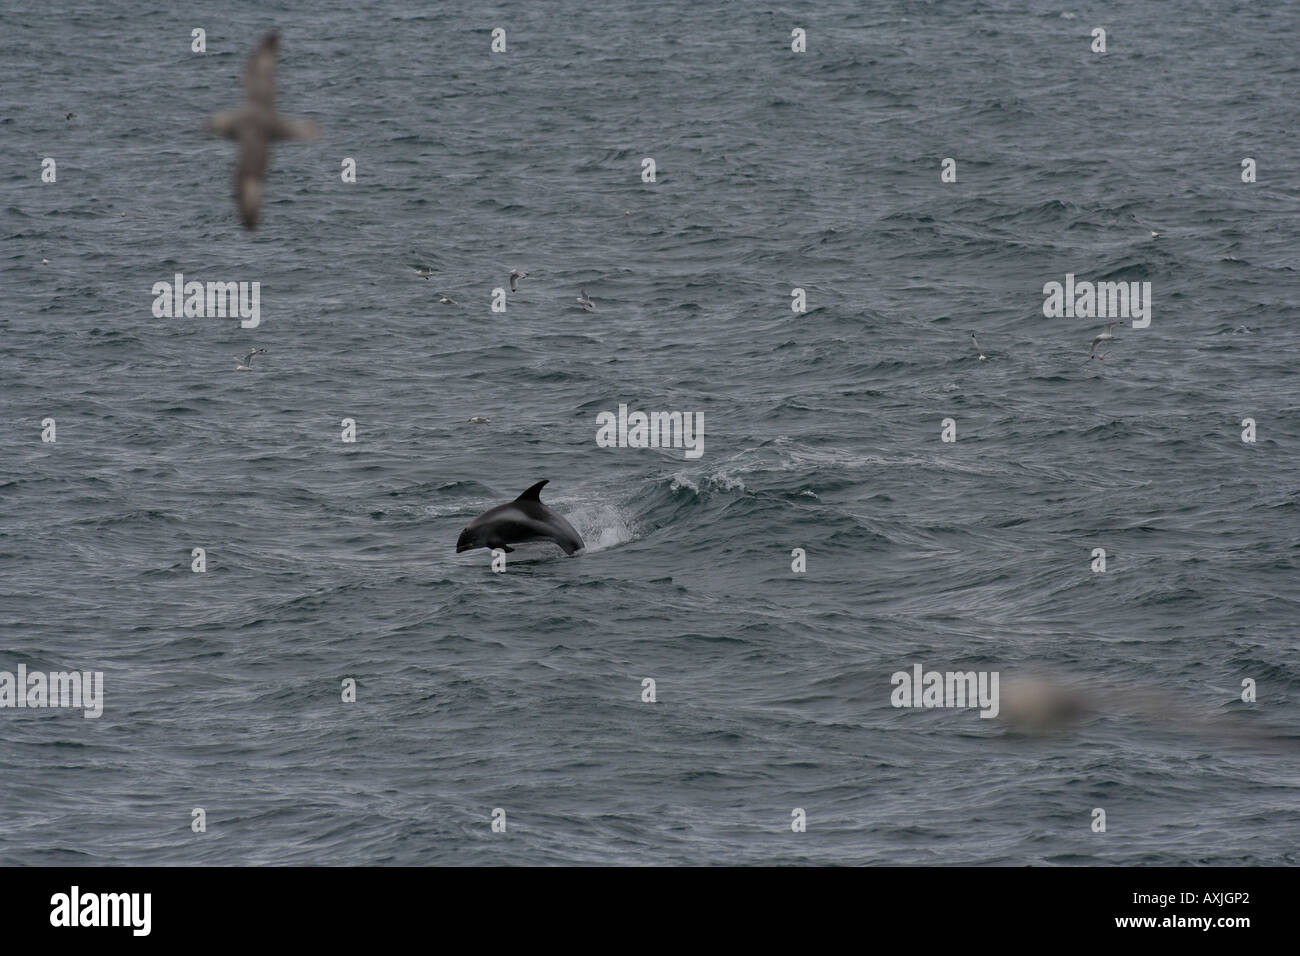 Una delle poche specie di delfini su Barent mare, espandendo la sua distribuzione verso nord a causa del clima più caldo Foto Stock